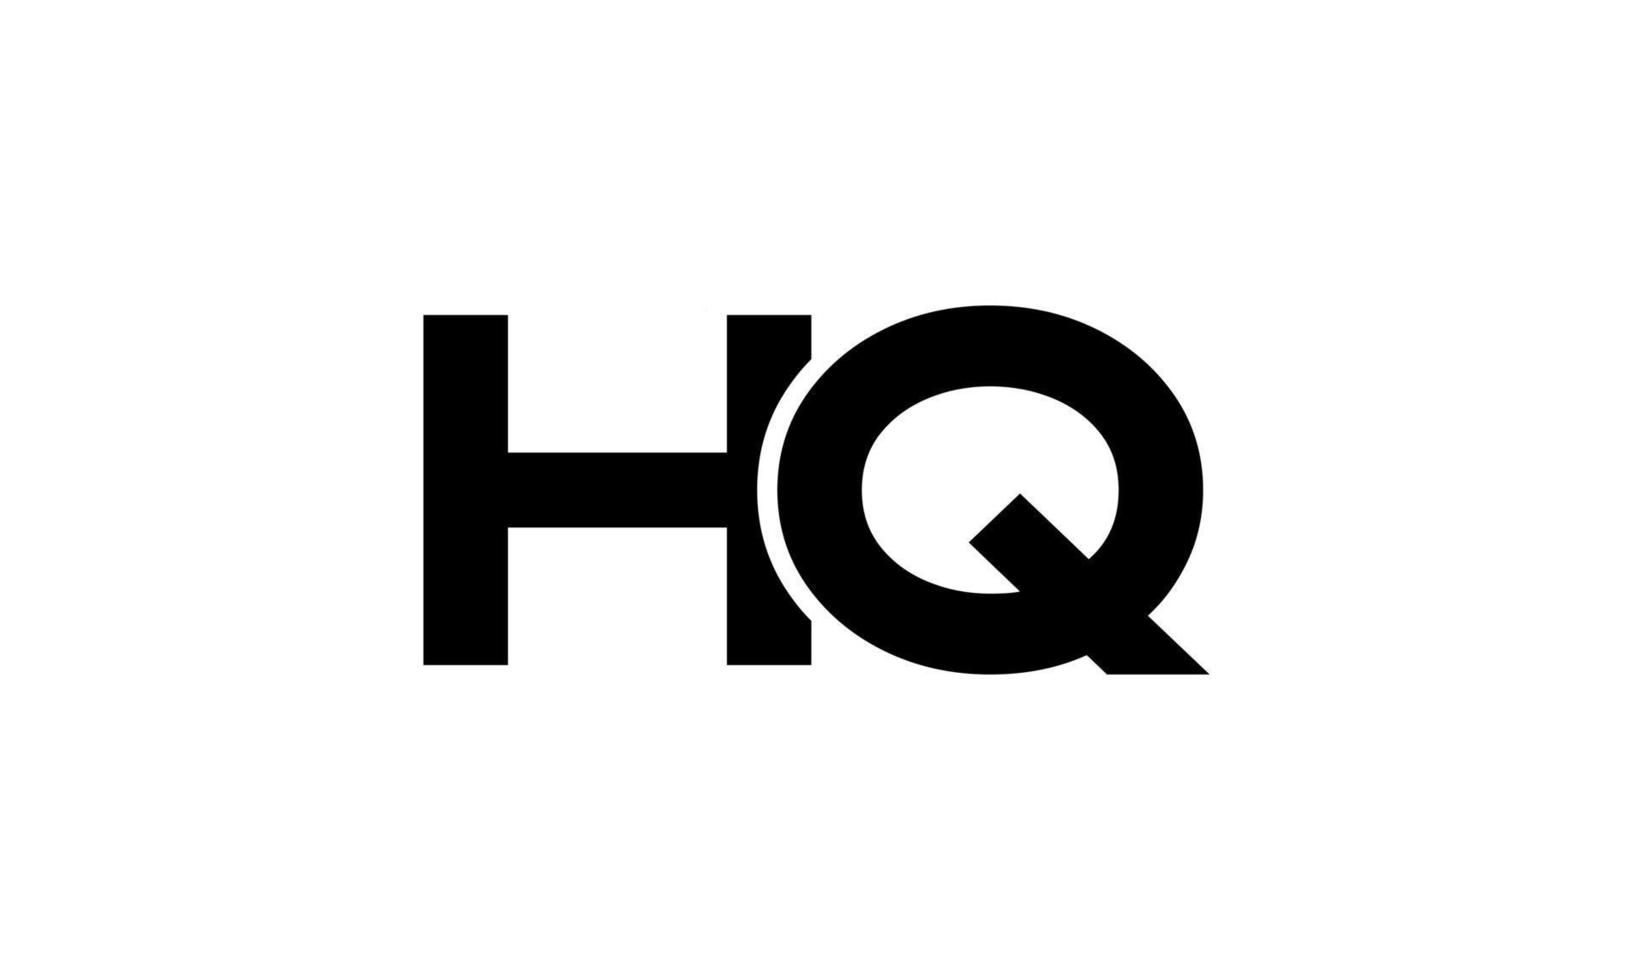 Buchstabe hq Logo pro Vektordatei pro Vektor